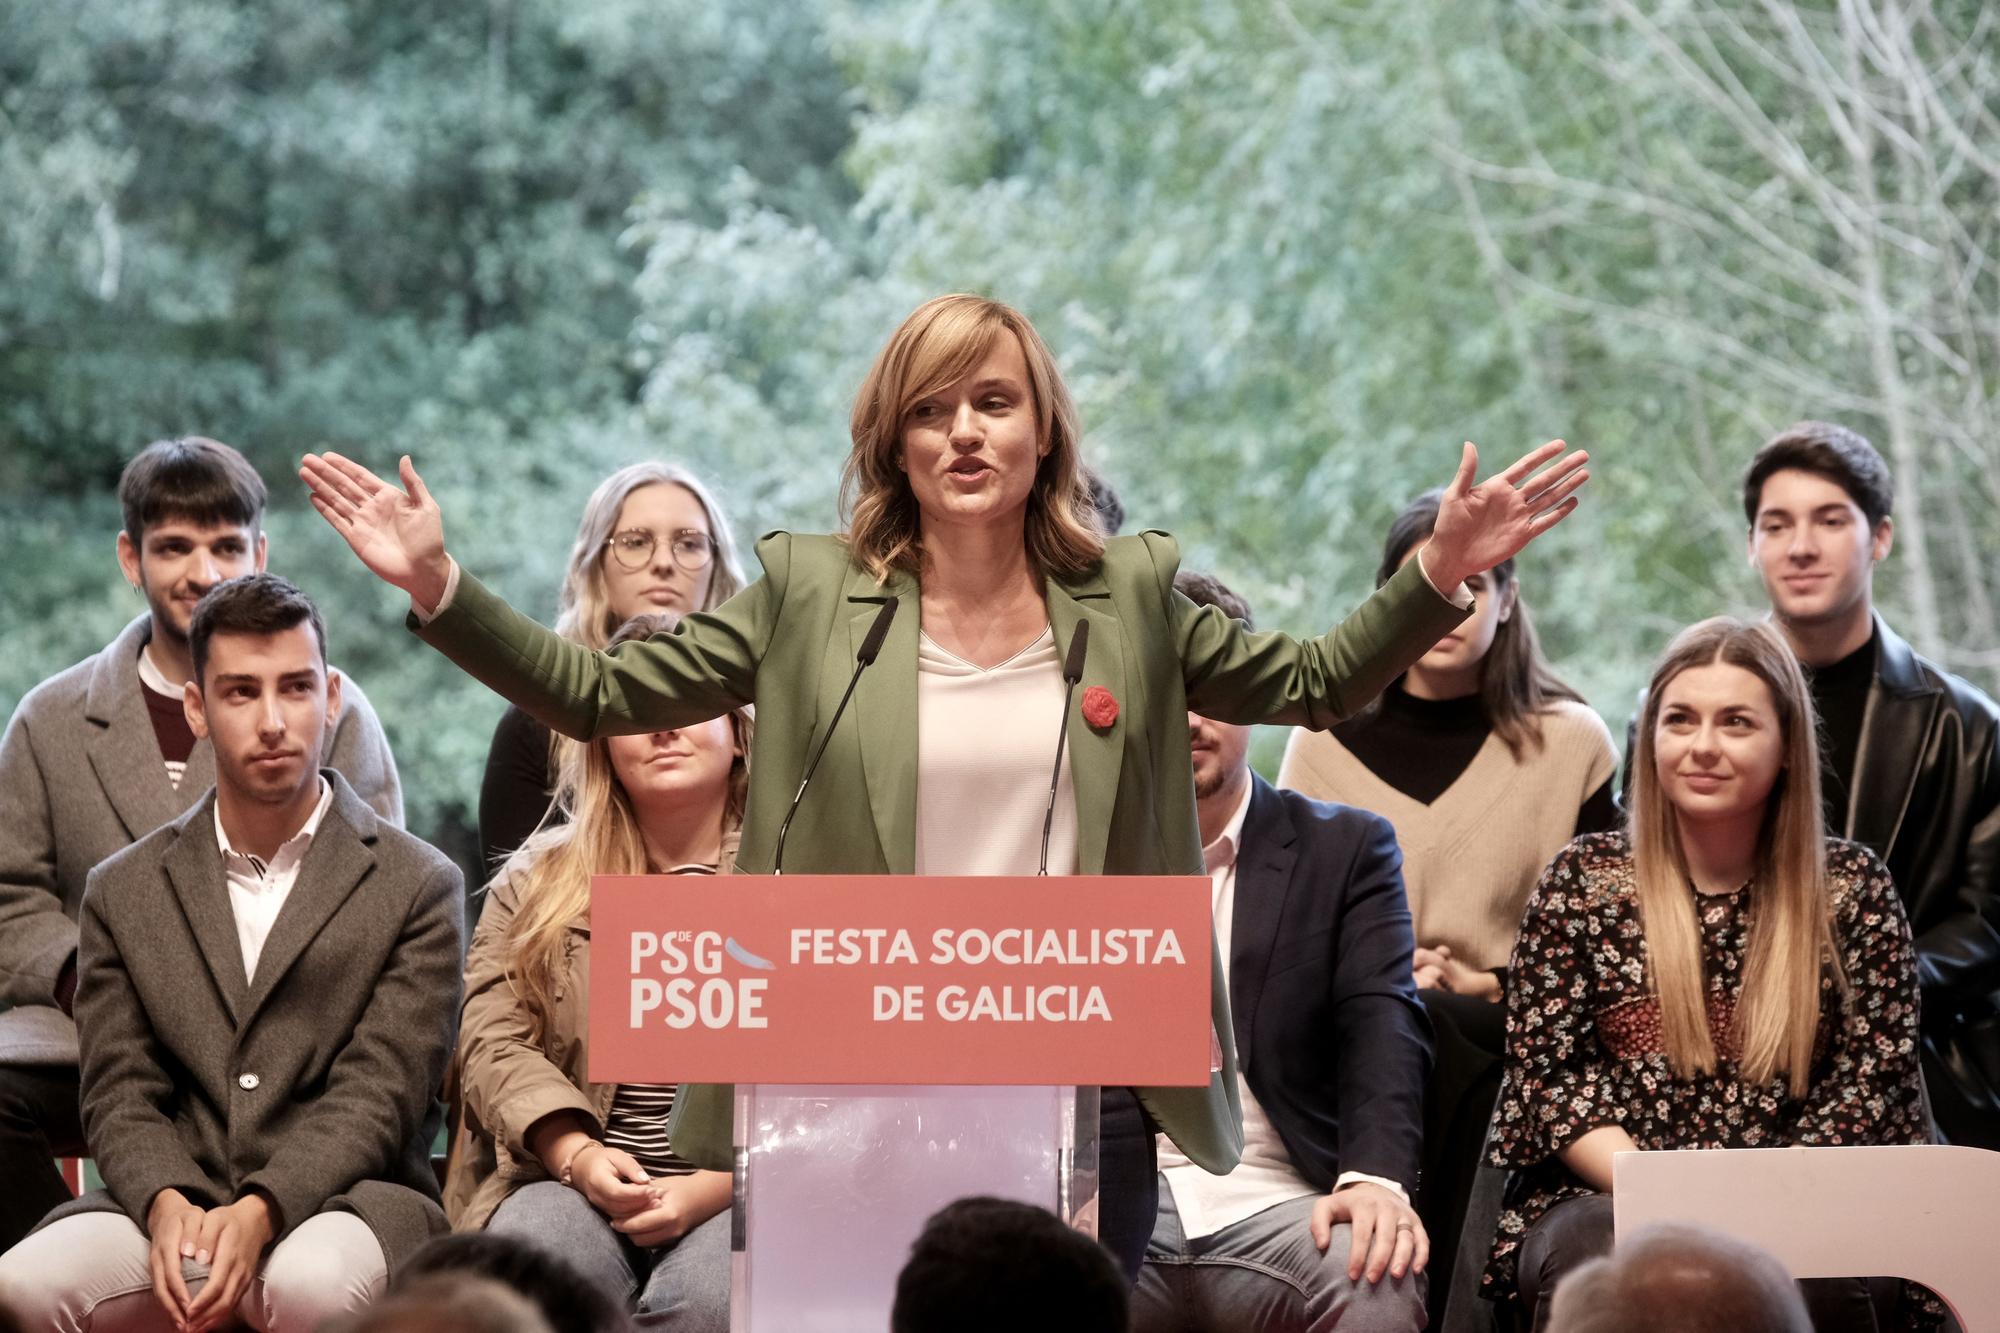 Fiesta de los socialistas gallegos en Siguieiro